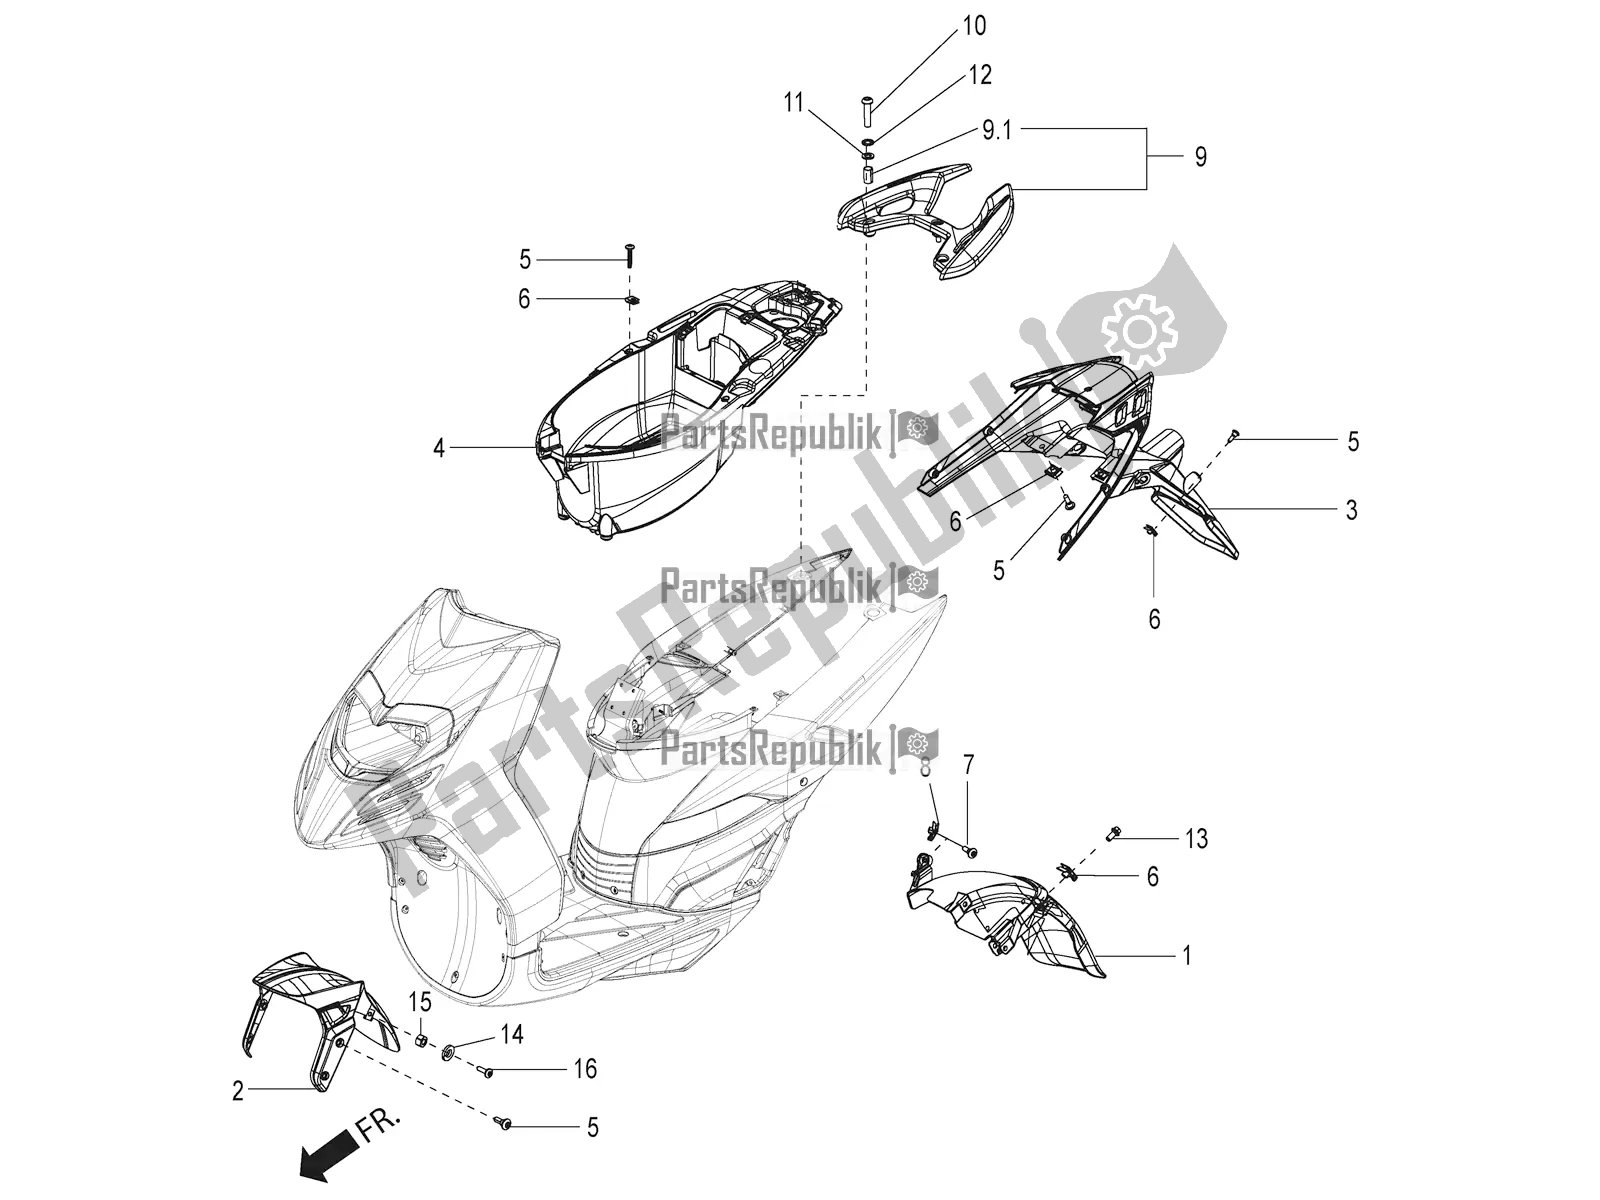 All parts for the Mudguard And Helmet Case of the Aprilia SR 125 Storm TT Bsiv Latam 2021